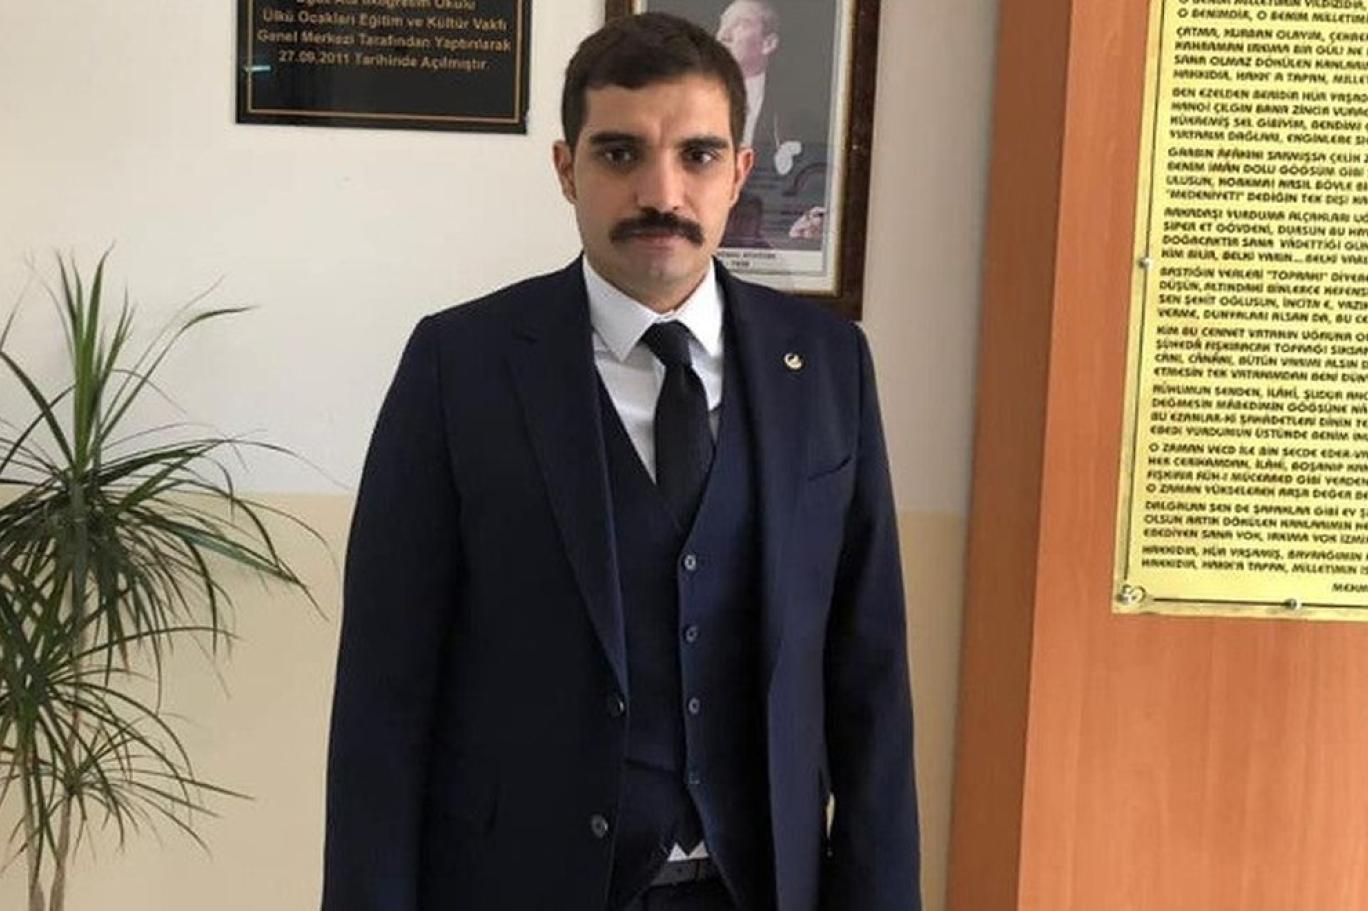 Barış Terkoğlu: Sinan Ateş cinayetinde çözülen düğüm | Independent Türkçe